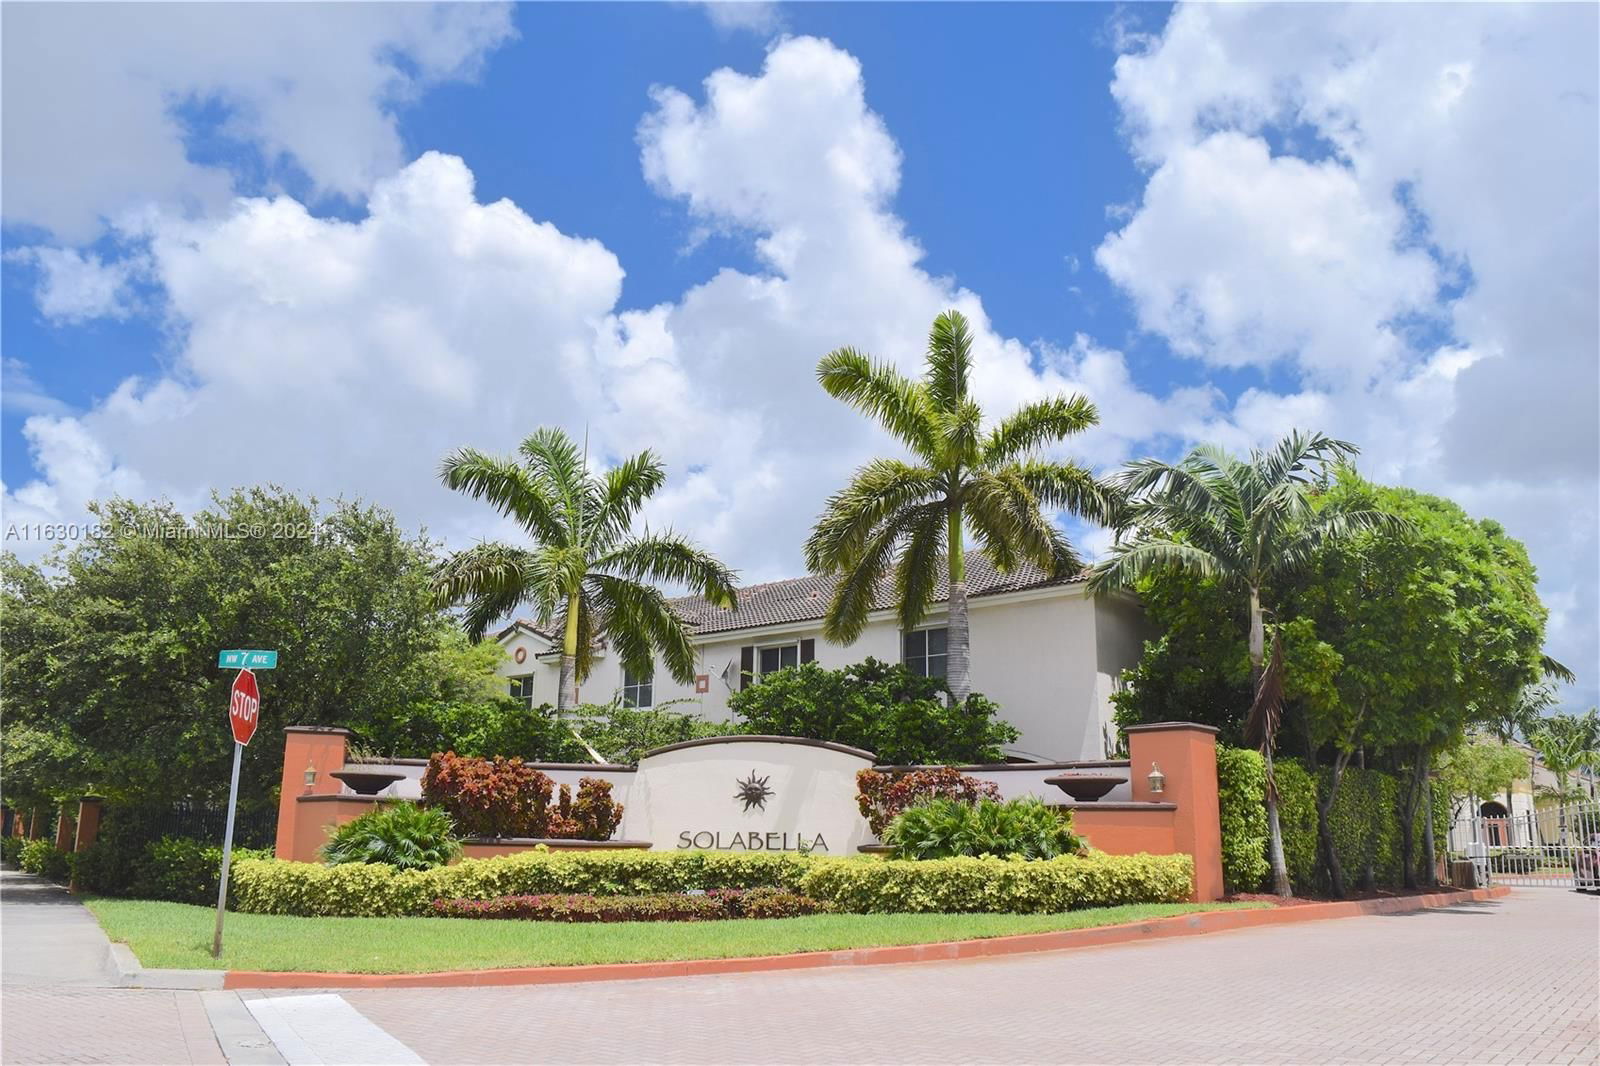 Real estate property located at 17331 7th Ave #109, Miami-Dade County, SOLABELLA CONDO, Miami Gardens, FL